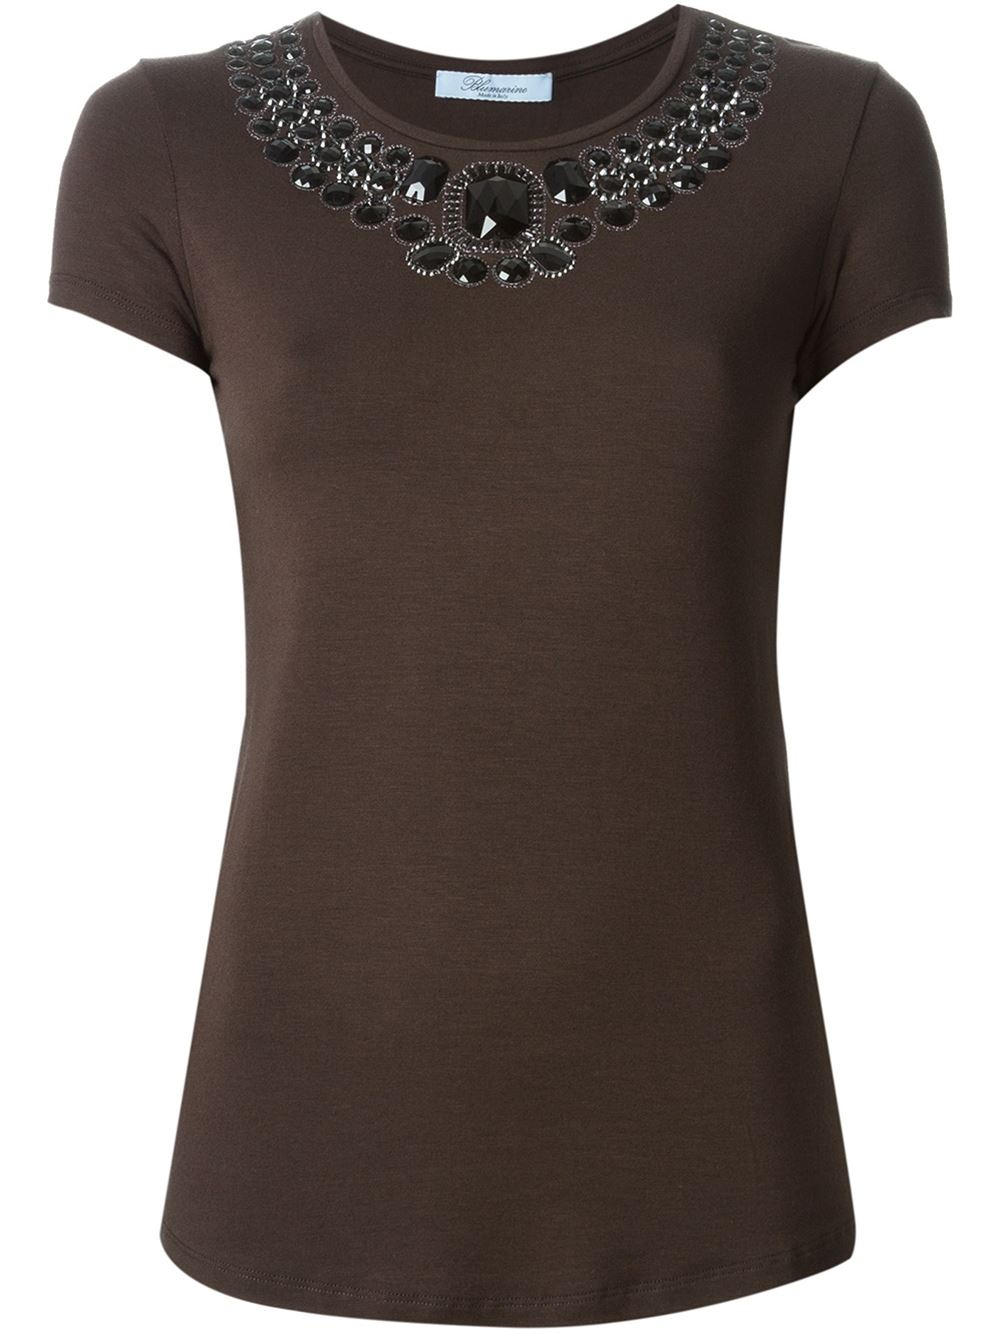 Blumarine Embellished Neckline T-shirt in Brown - Lyst